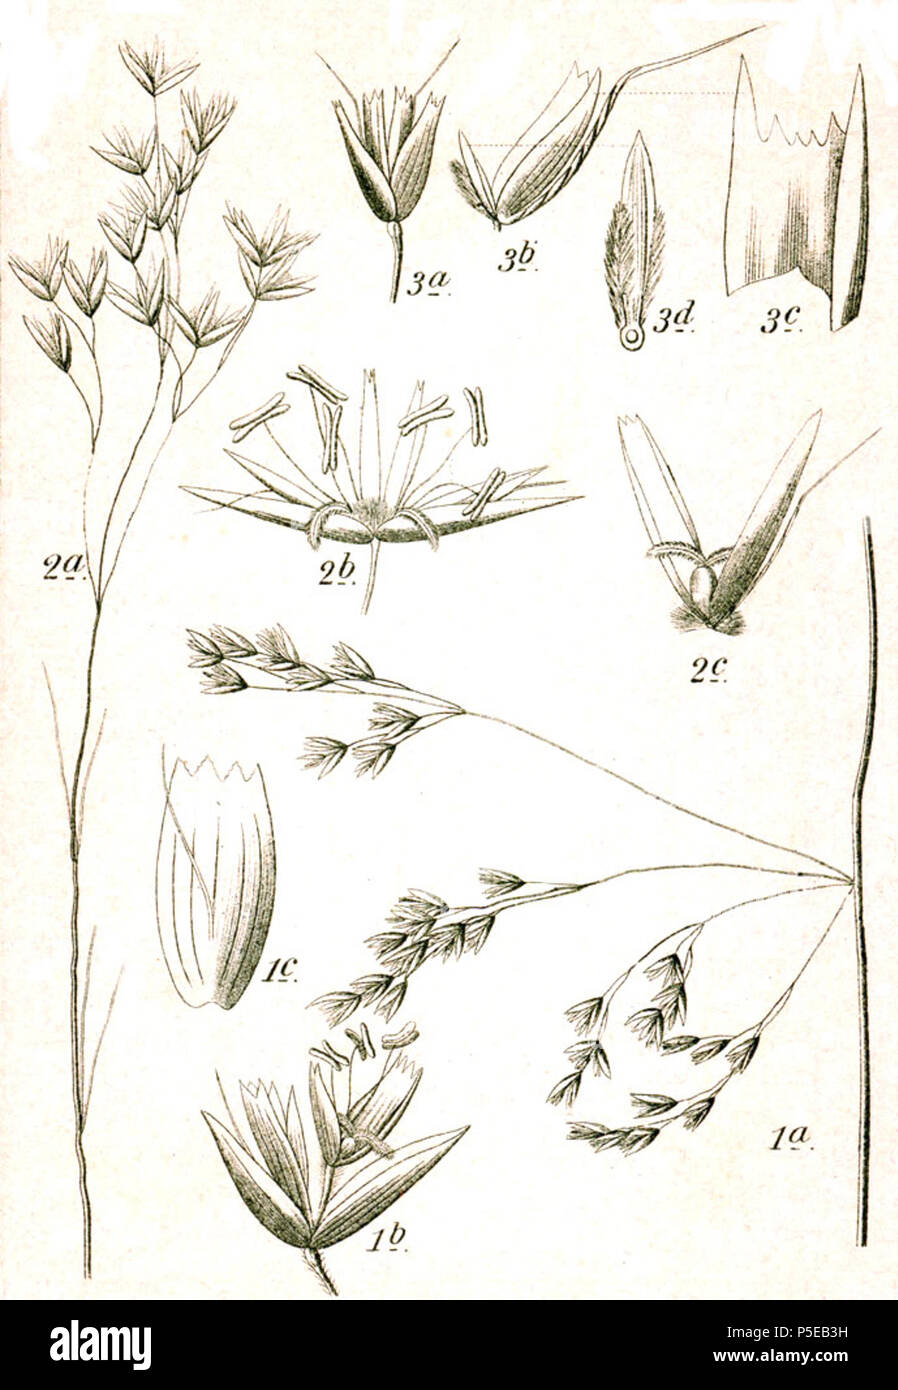 N/A. 1. Deschampsia cespitosa (L.) P.Beauv. 2. Avenella flexuosa (L.) Drejer, syn. Deschampsia flexuosa (L.) Trin. subsp. flexuosa 3. Deschampsia setacea (Huds.) Hack., syn. Deschampsia discolor (Thuill.) Roem. & Schult. Original Caption 1. Rasen-Schmiele, Deschampsia caespitosa L. 2. Wald-Schmiele, D. flexuosa L. 3. Bunte Schmiele, D. discolor Thuill. . 1796. Johann Georg Sturm (Painter: Jacob Sturm) 438 Deschampsia spp Sturm21 Stock Photo